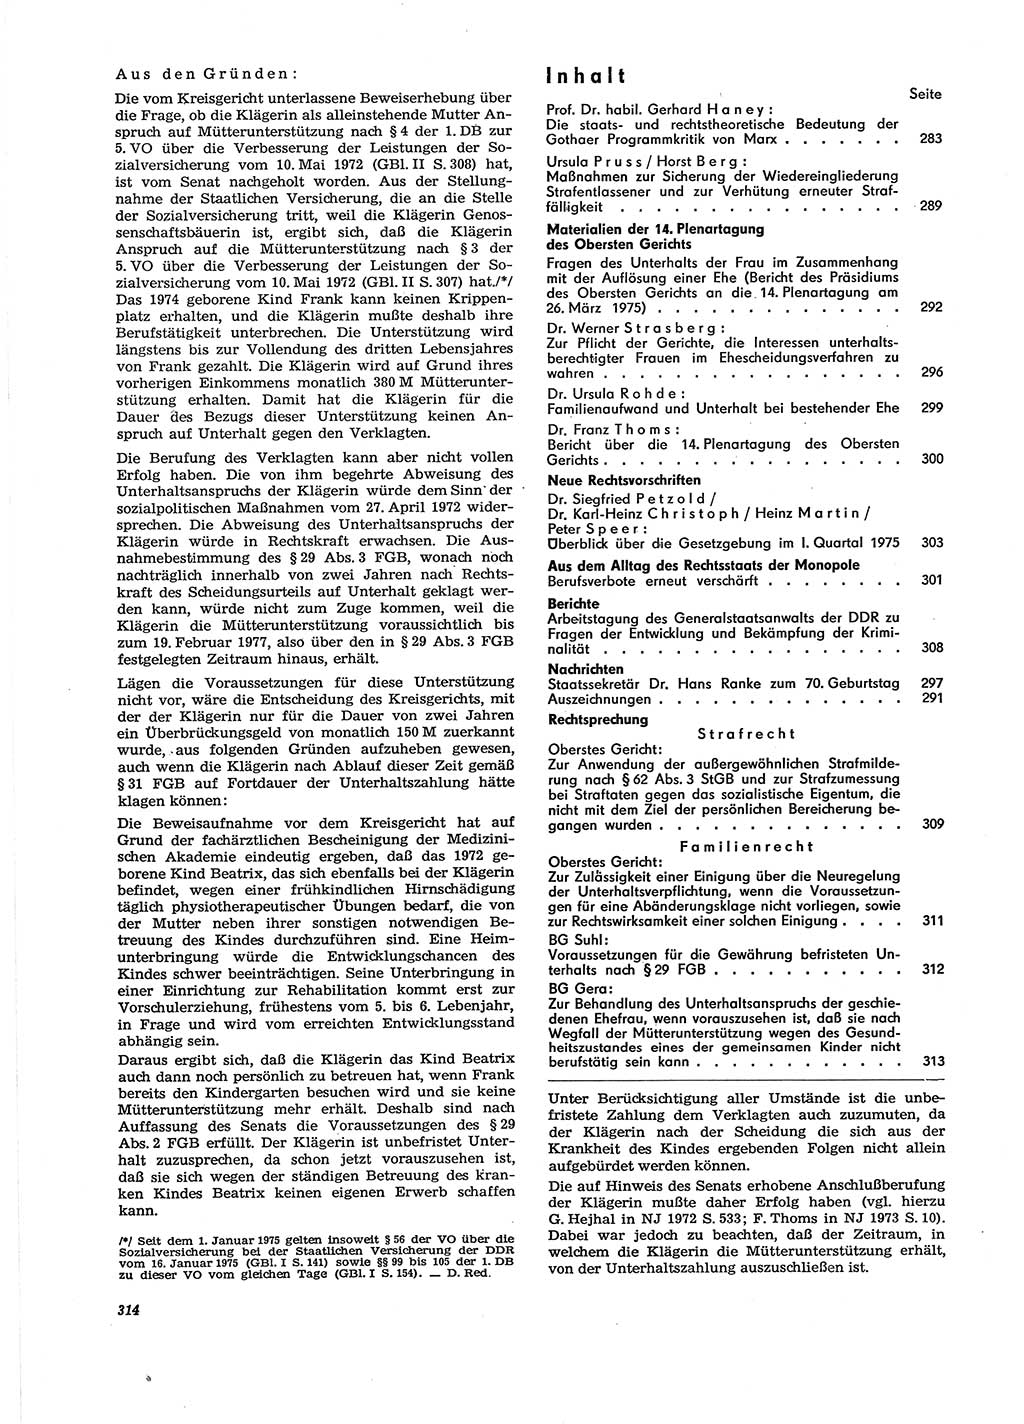 Neue Justiz (NJ), Zeitschrift für Recht und Rechtswissenschaft [Deutsche Demokratische Republik (DDR)], 29. Jahrgang 1975, Seite 314 (NJ DDR 1975, S. 314)